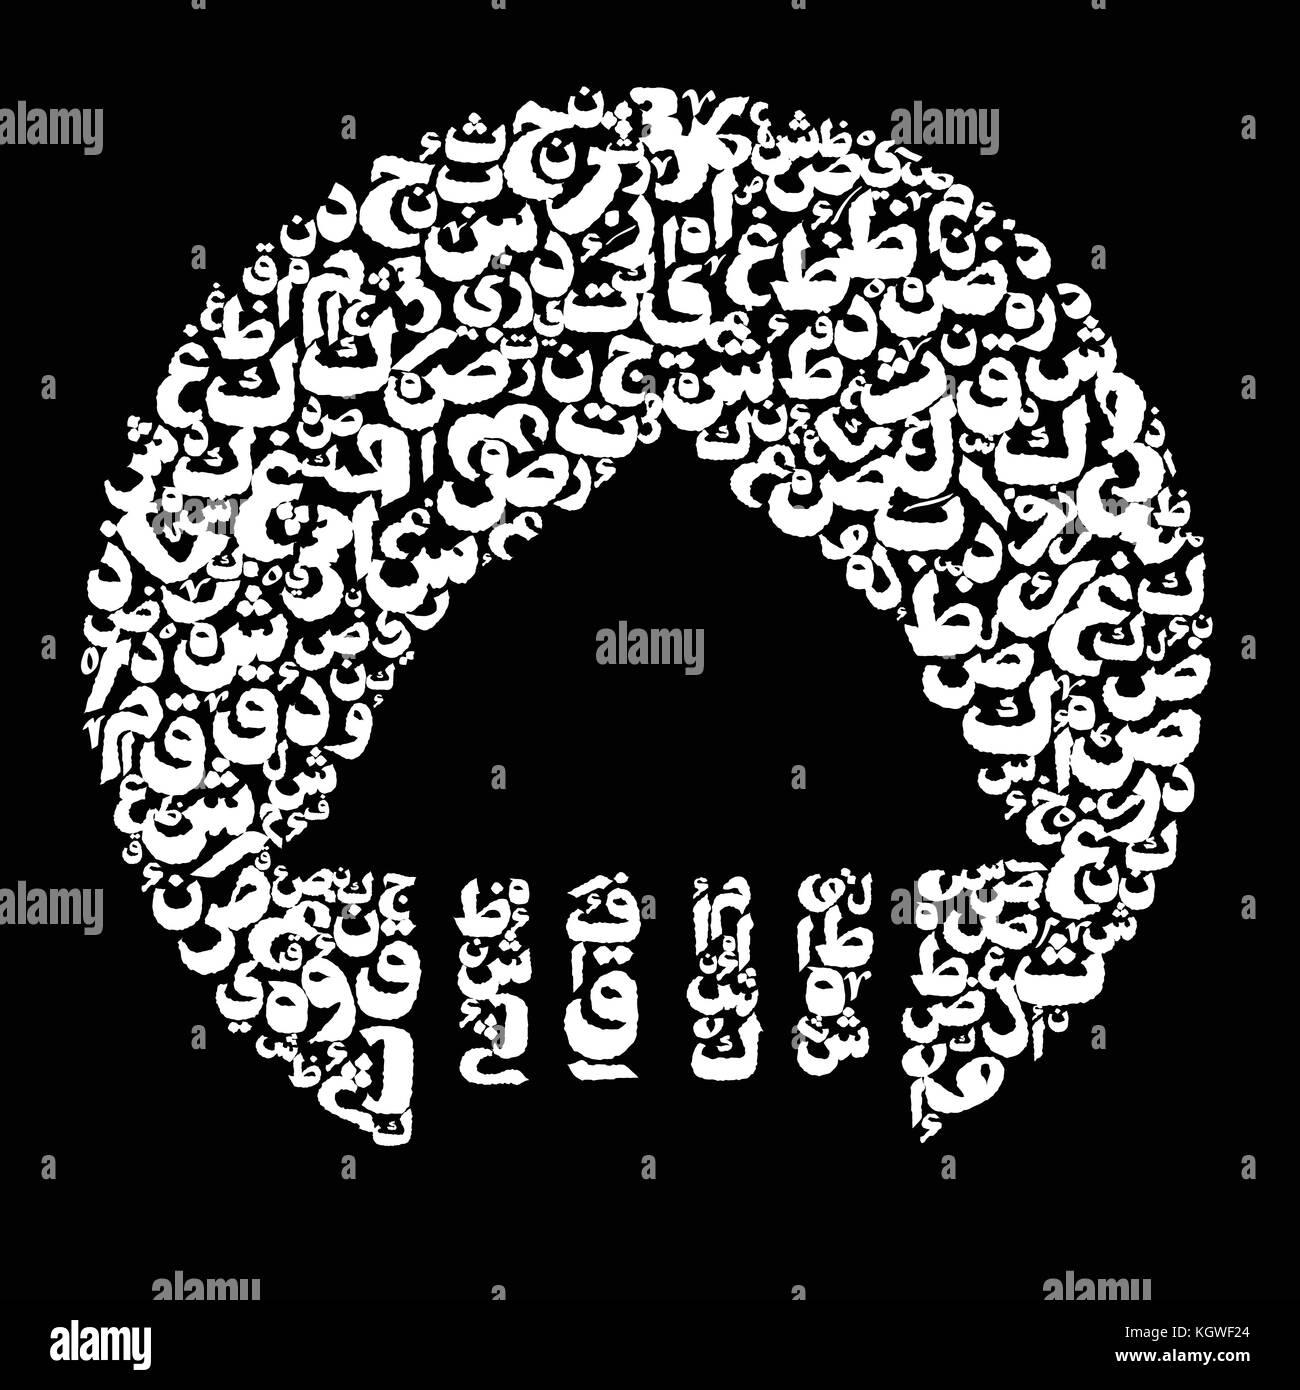 Résumé Contexte minéral et la pleine lune avec l'alphabet arabe dans l'arrière-plan de nuit. abstract creative modèle de mise en page papier illustration art. Illustration de Vecteur